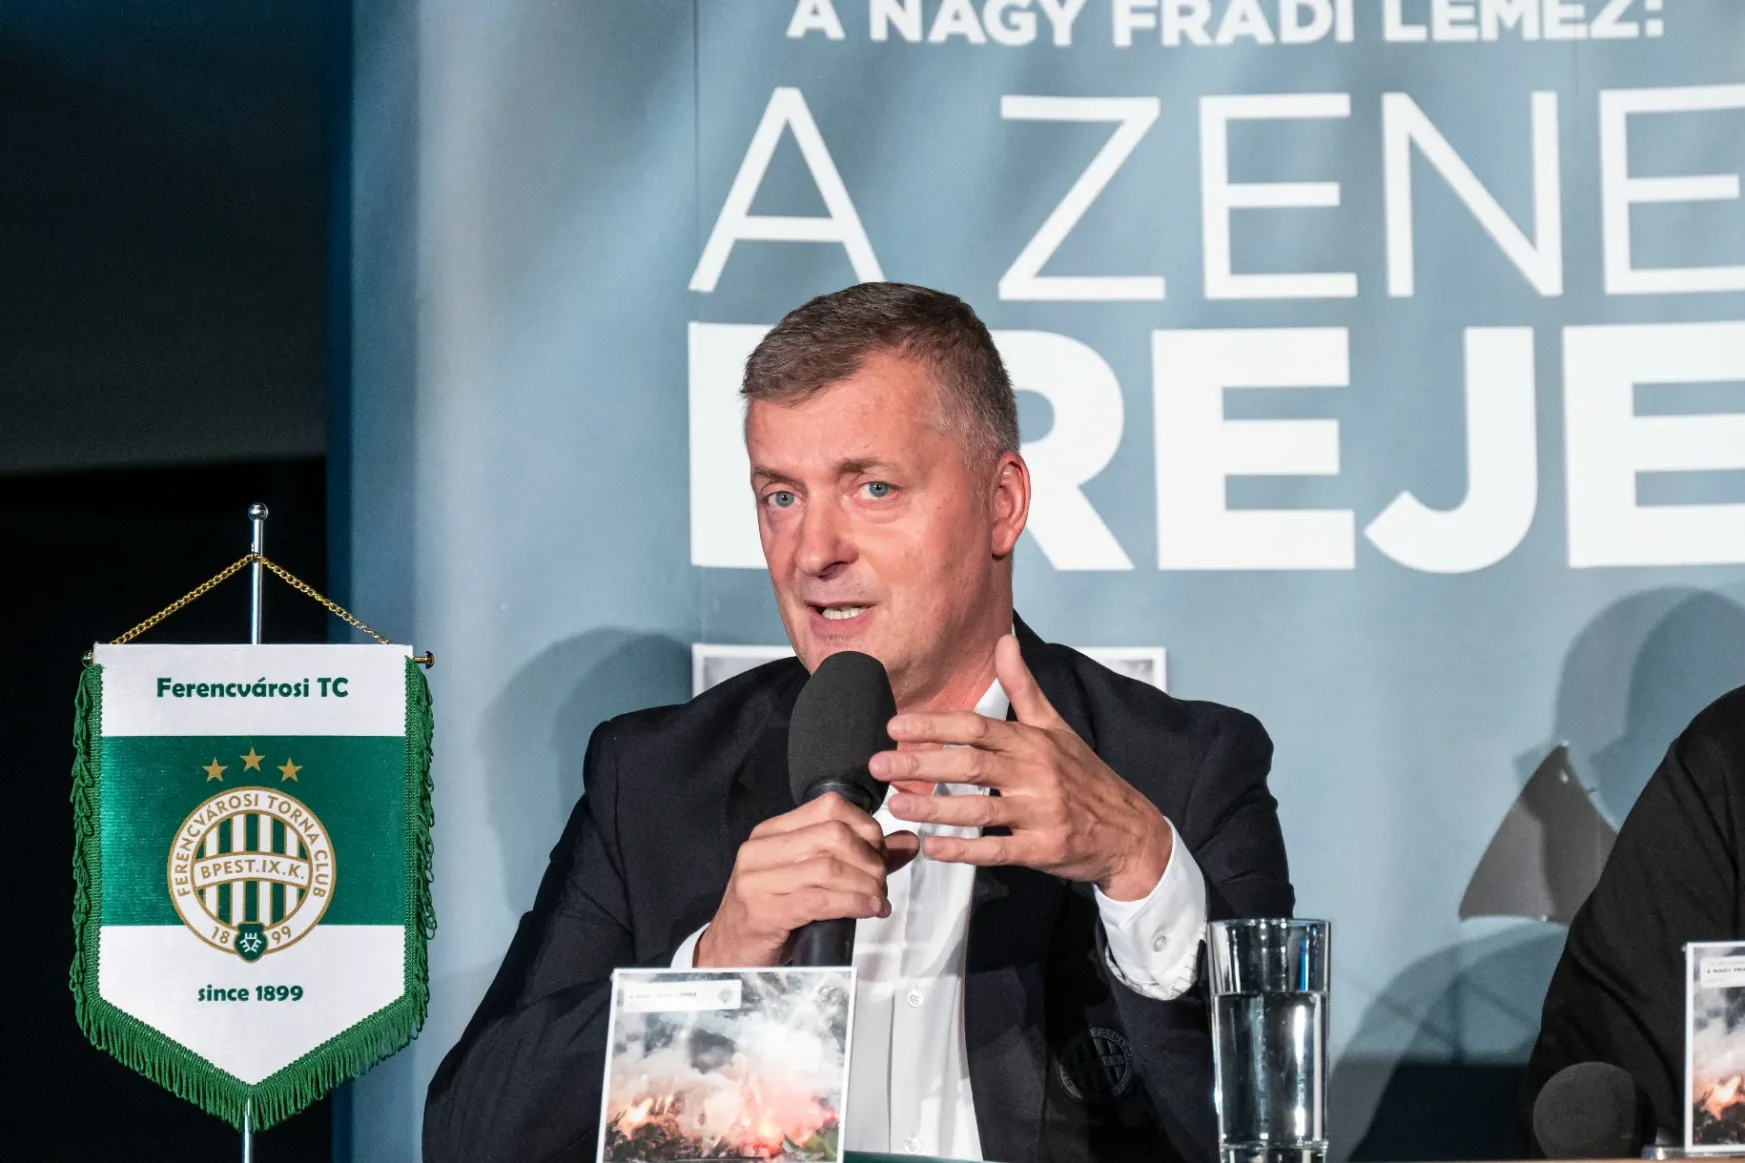 Interjút kértünk a Fidesz pártigazgatójától, a Fradi sajtóosztálya jogi lépéseket helyezett kilátásba